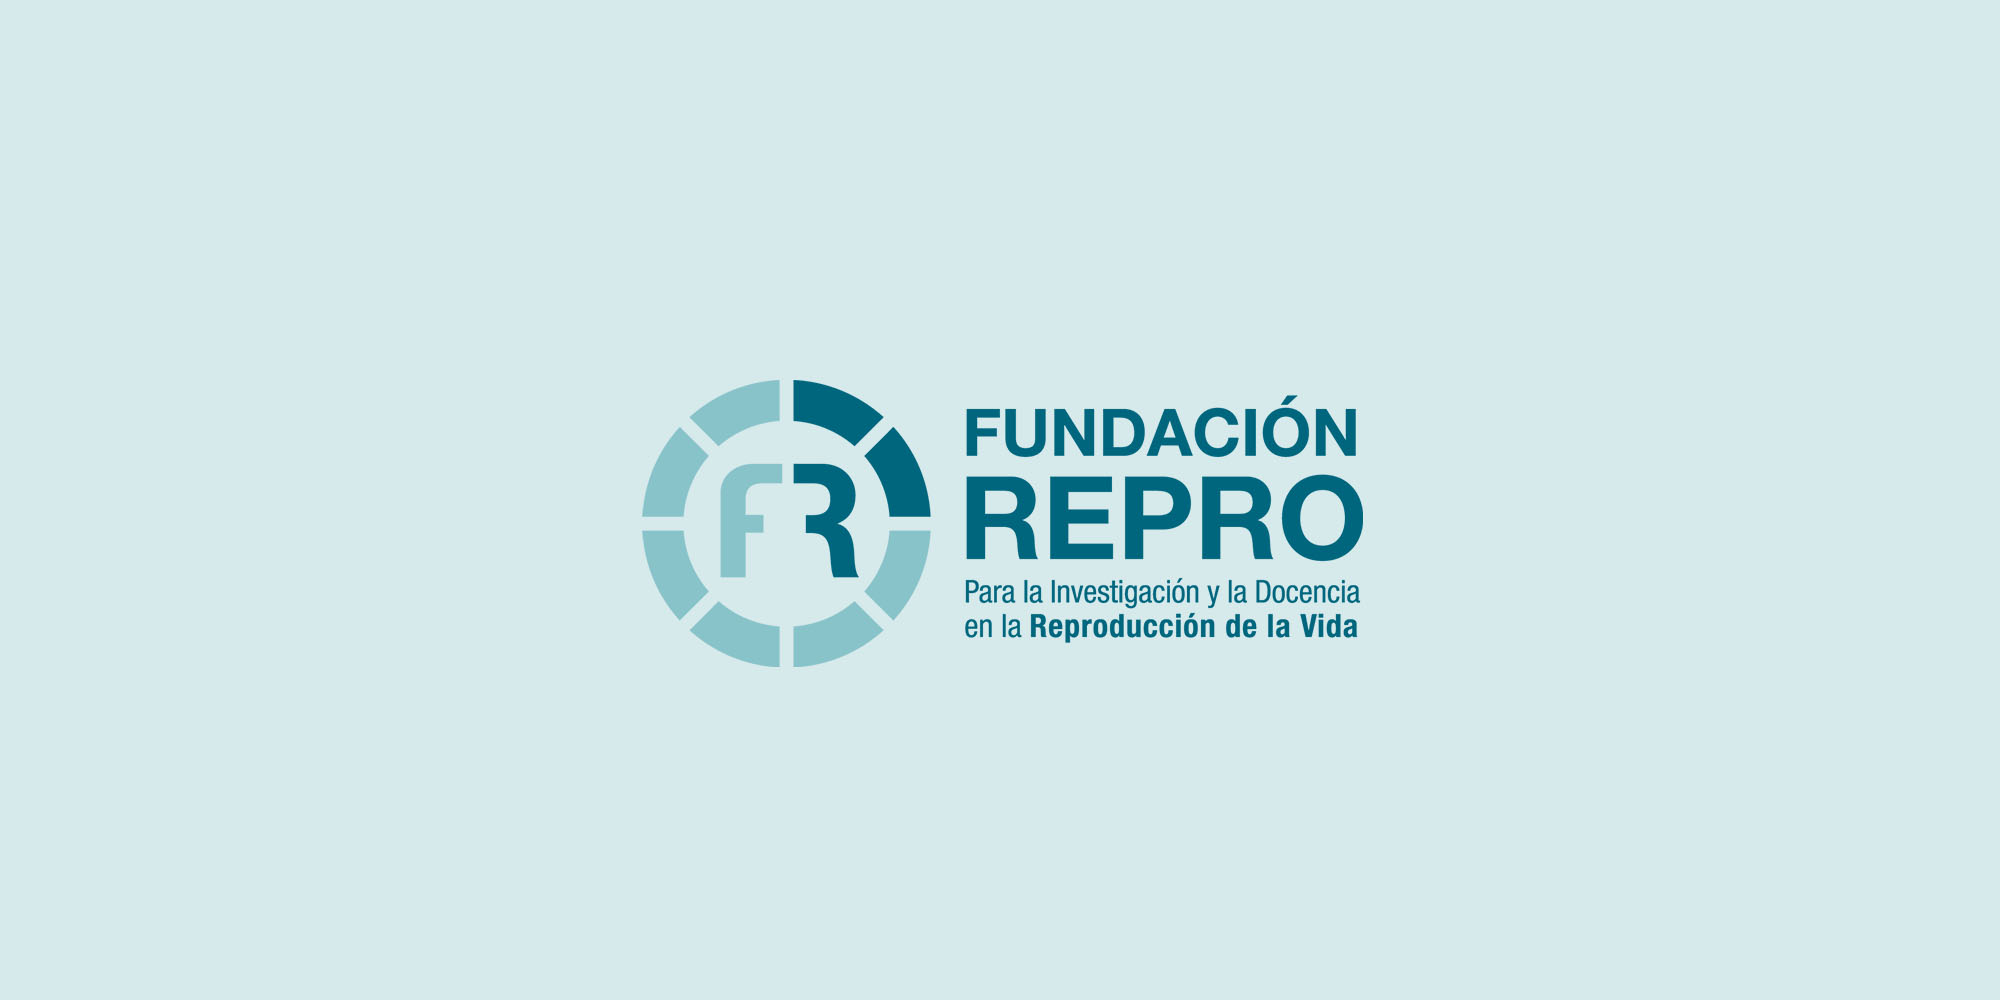 CURSO ONLINE "Inmunología de la Reproducción aplicada a Medicina Reproductiva"